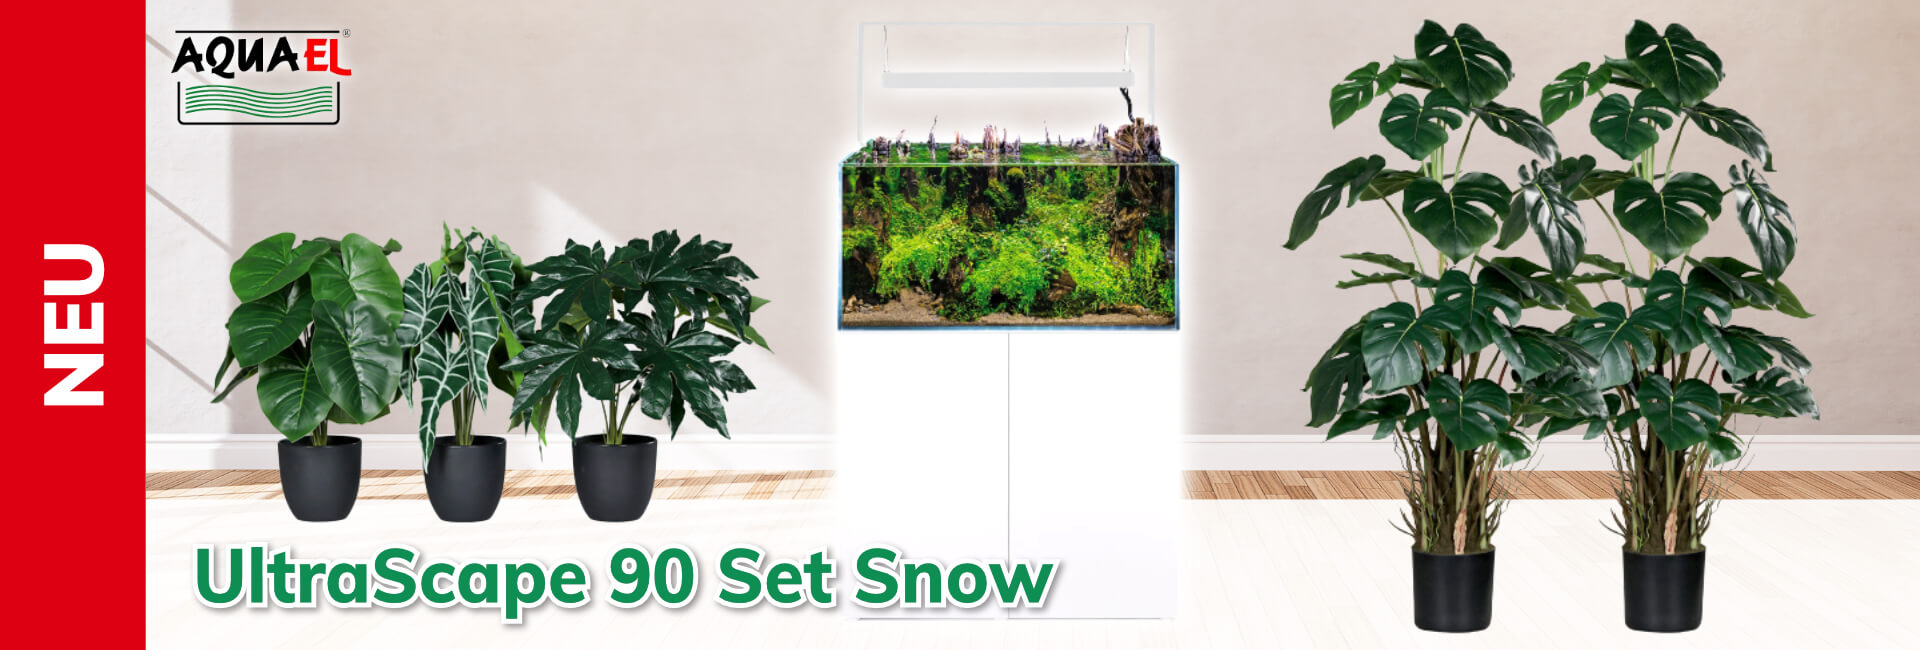 Aquael UltraScape 90 Set Snow